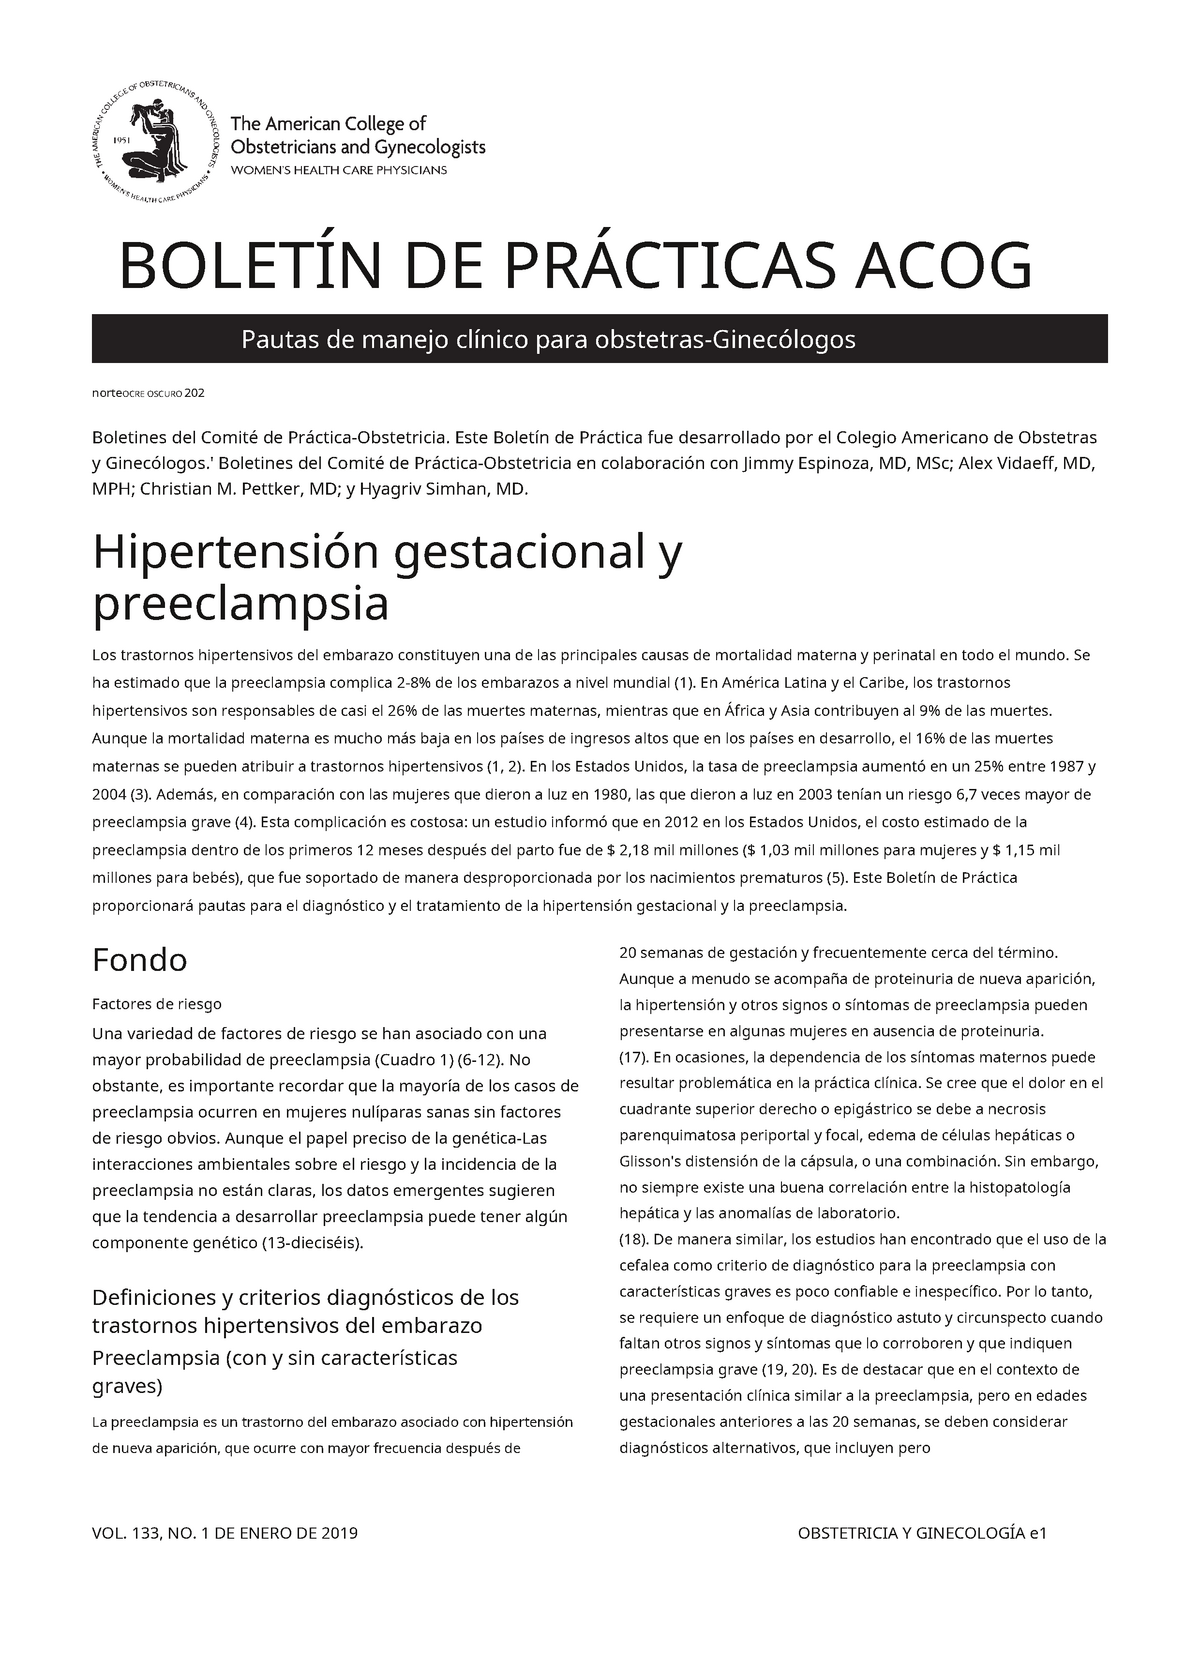 Hipertension Gestacional y Preeclampsia BOLETÍN DE PRÁCTICAS ACOG